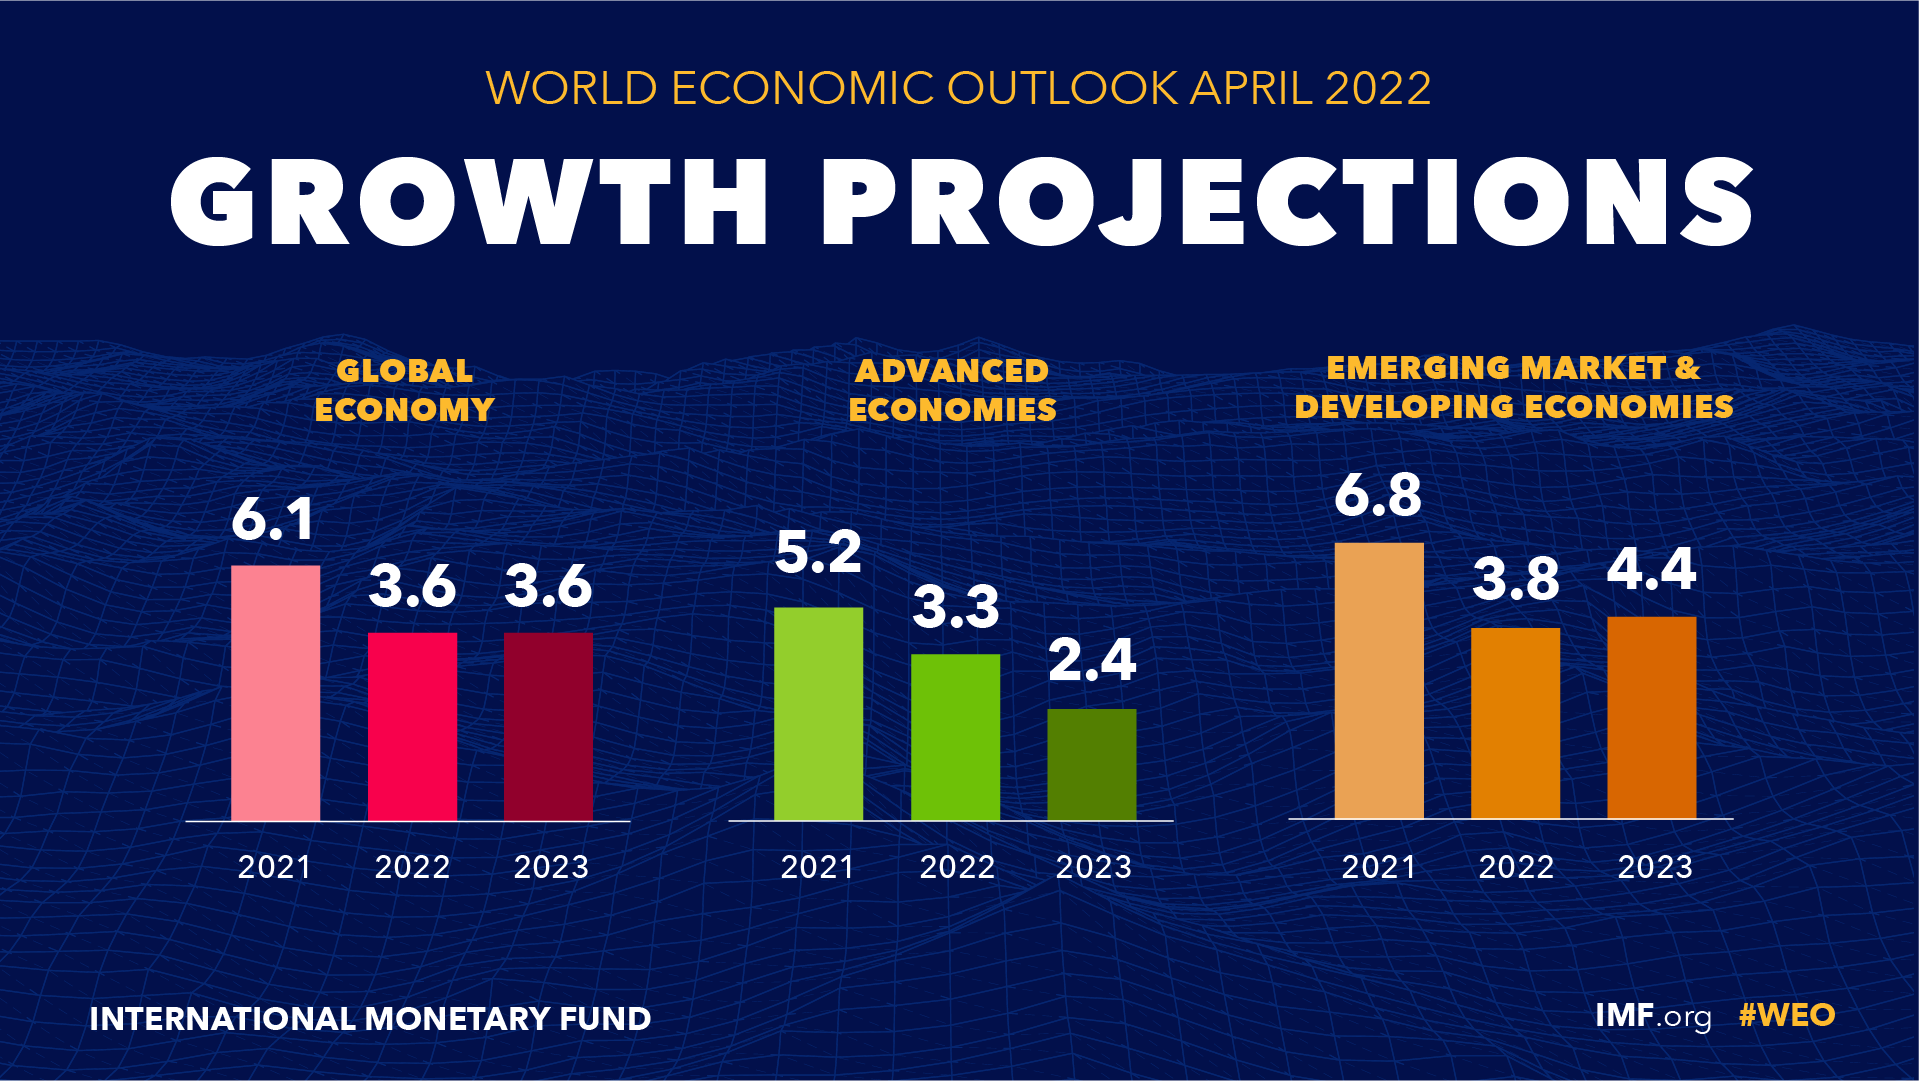 අන්තර්ජාතික මූල්‍ය අරමුදලට අනුව ලෝකයේ ආර්ථික වර්ධනය සහ දියුණු ආර්ථික වල වර්ධනය පහල බැසීම ( https://www.imf.org/en/Publications/WEO/Issues/2022/04/19/world-economic-outlook-april-2022 )